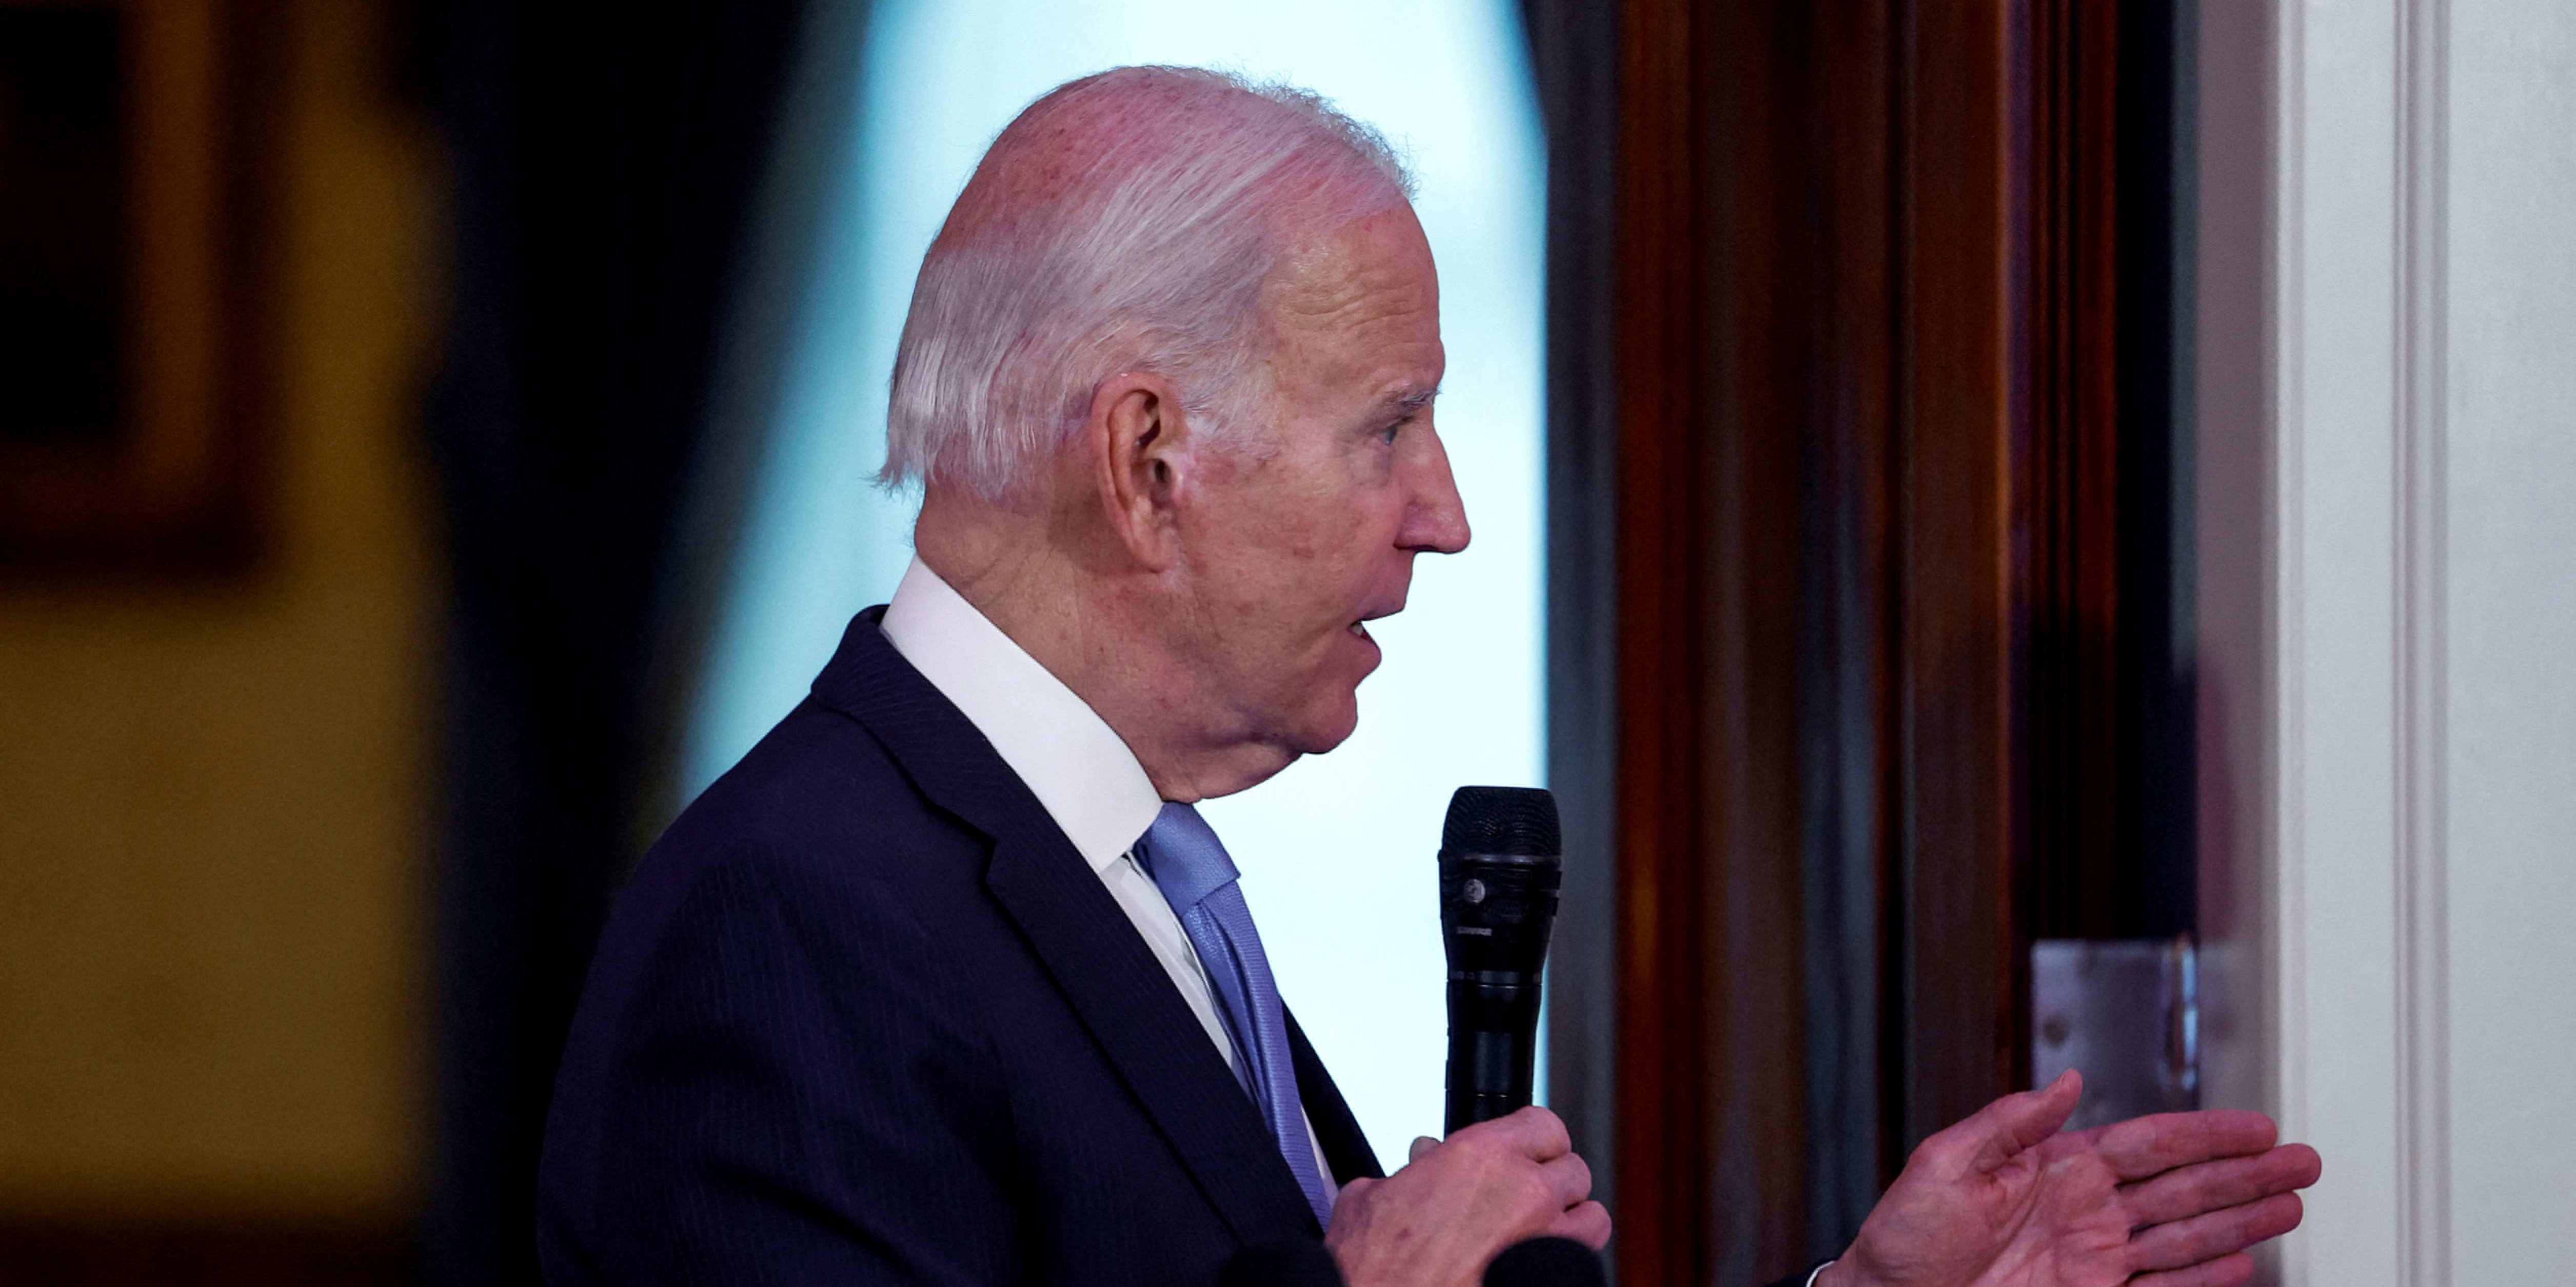 Intelligence artificielle: Biden convoque les acteurs pour évoquer les risques potentiels